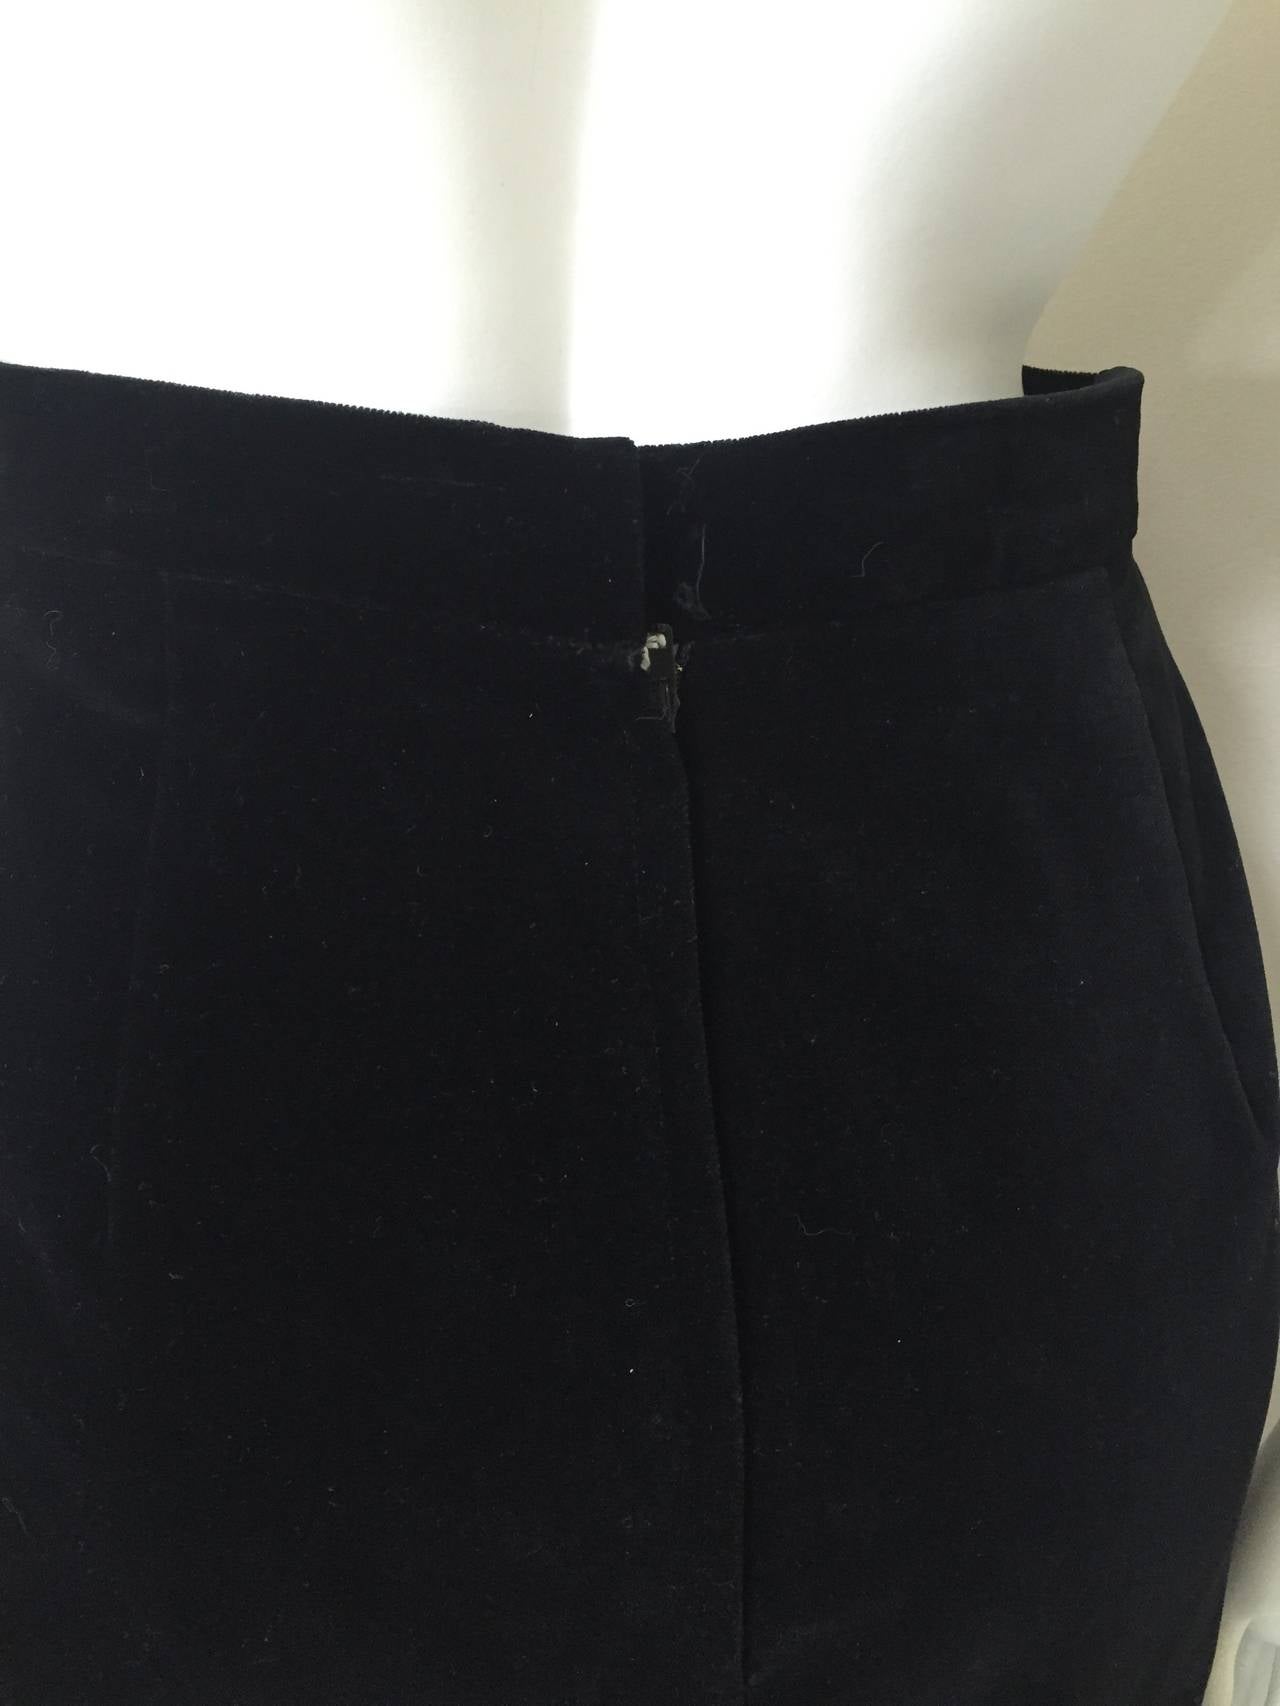 Caroline Charles London for Neiman Marcus 1980s Long Black Velvet Skirt Size 4. 2